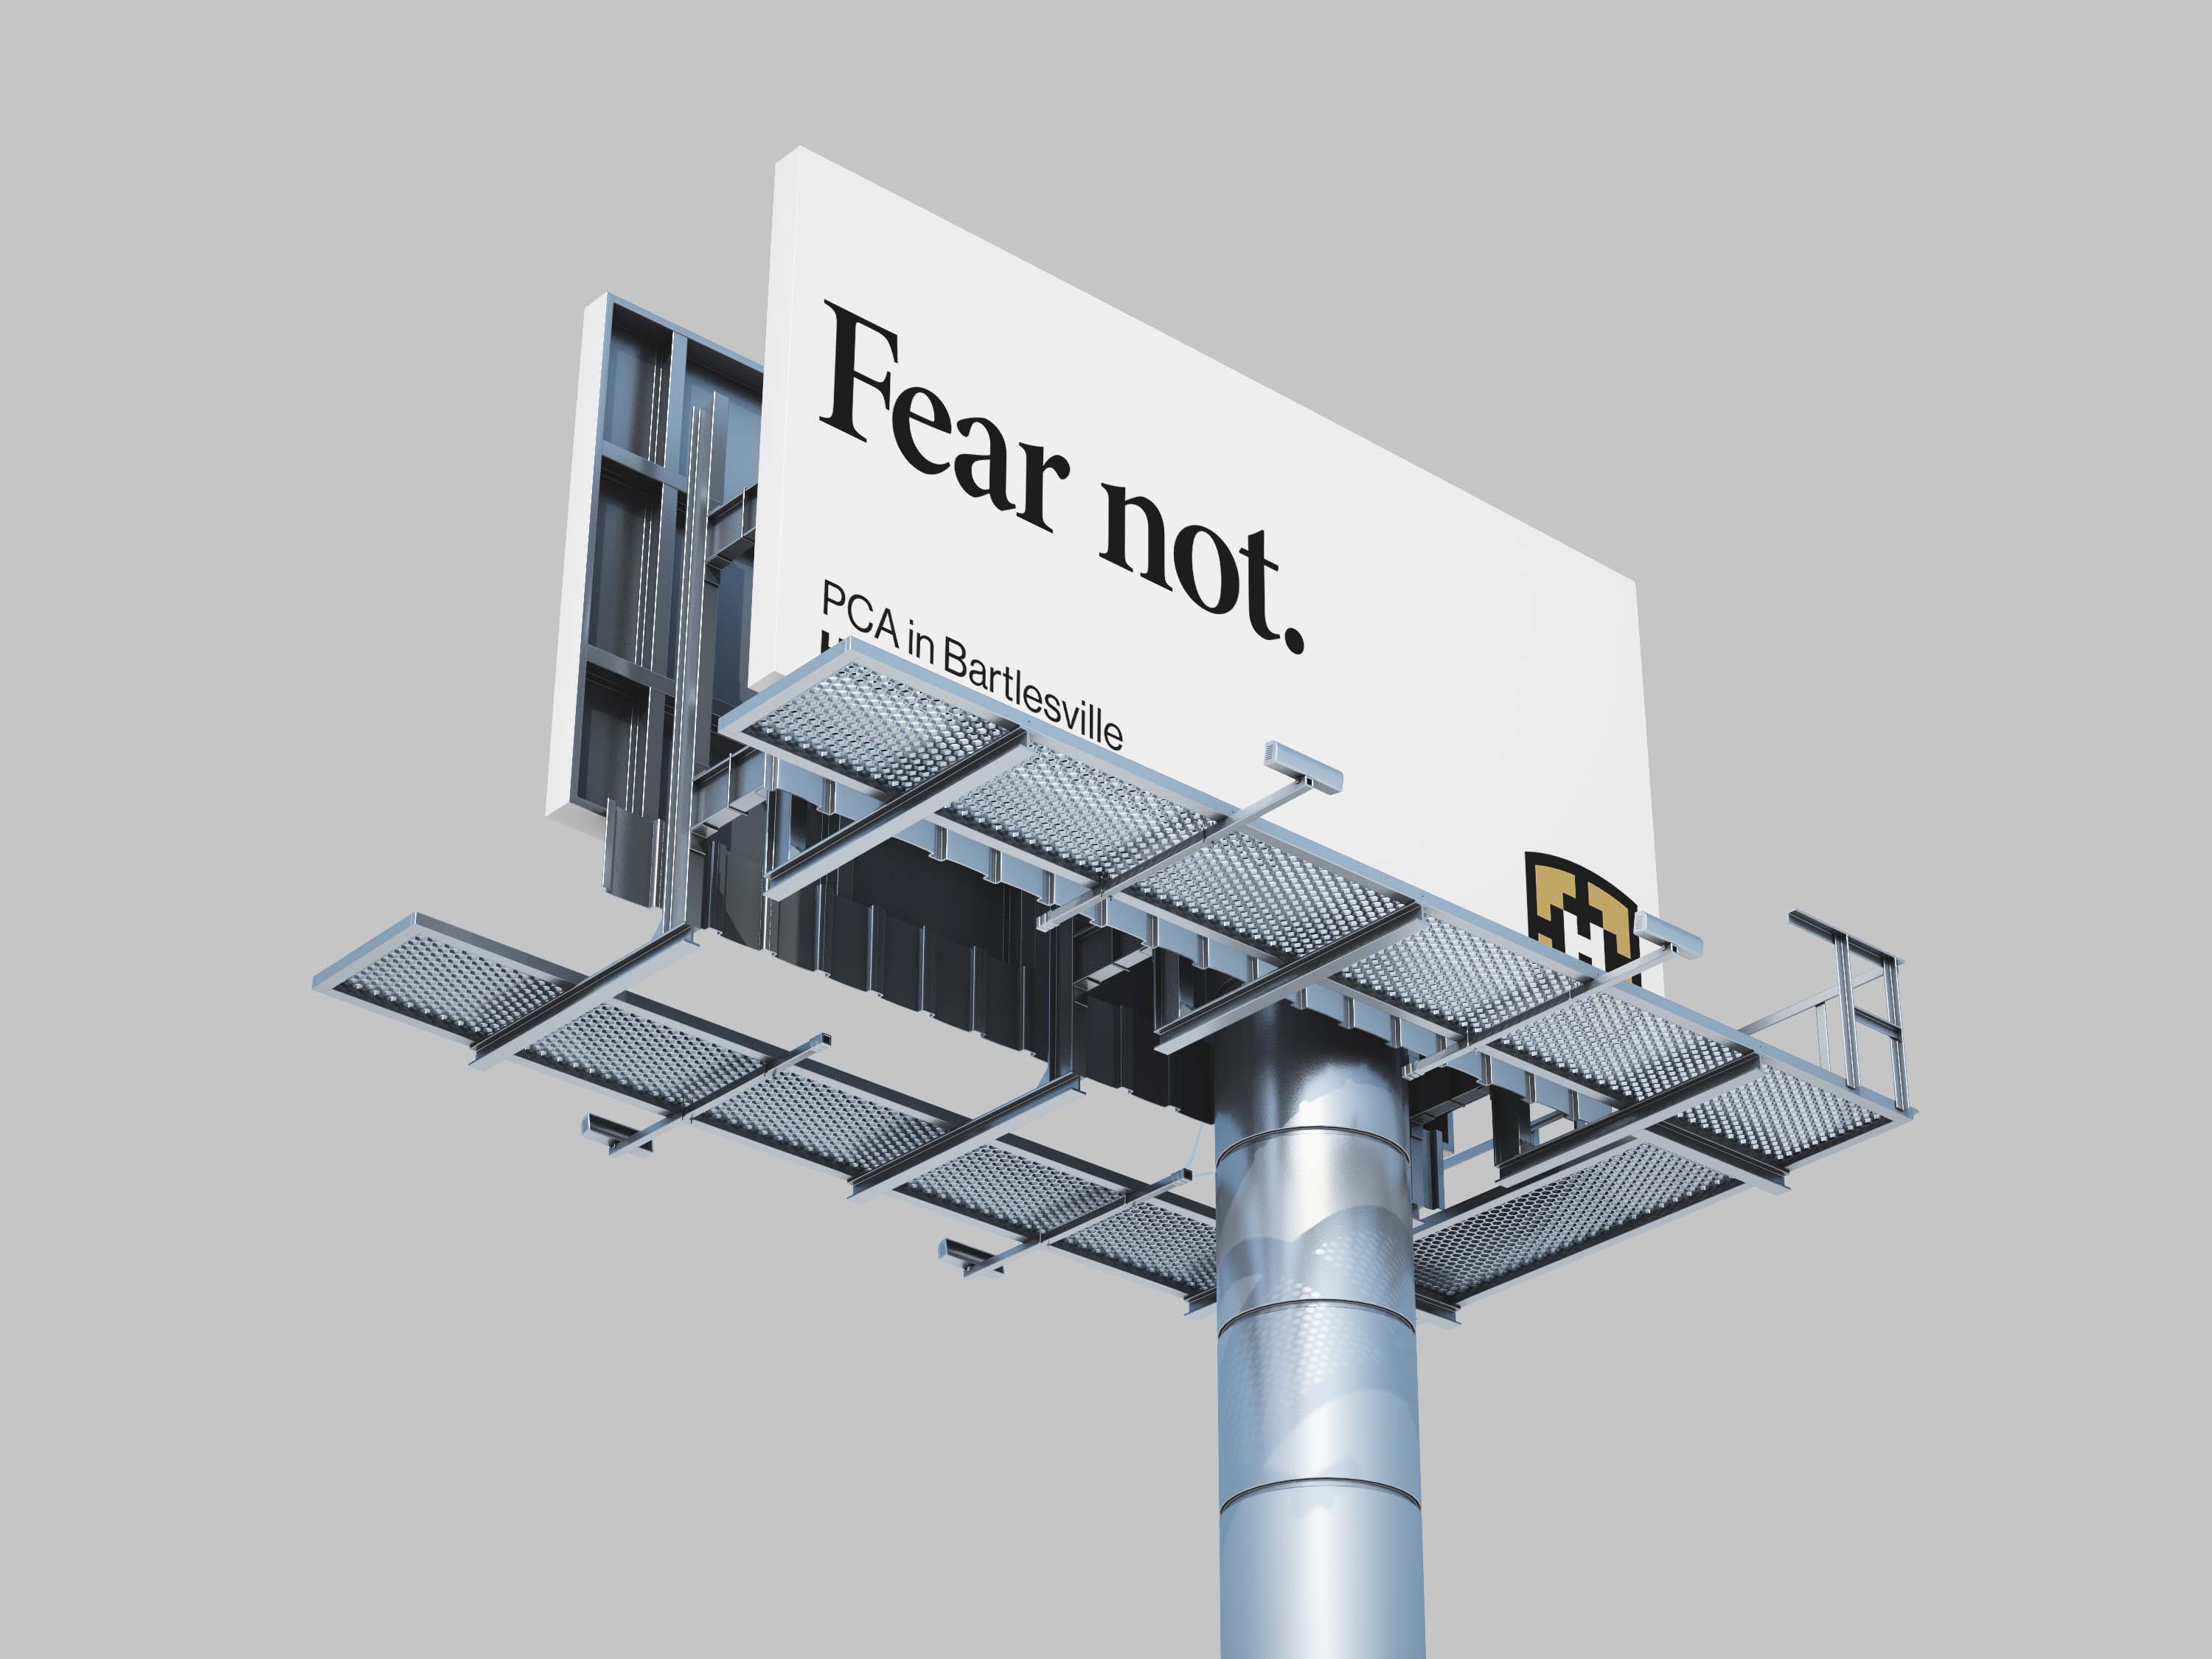 Fear not.